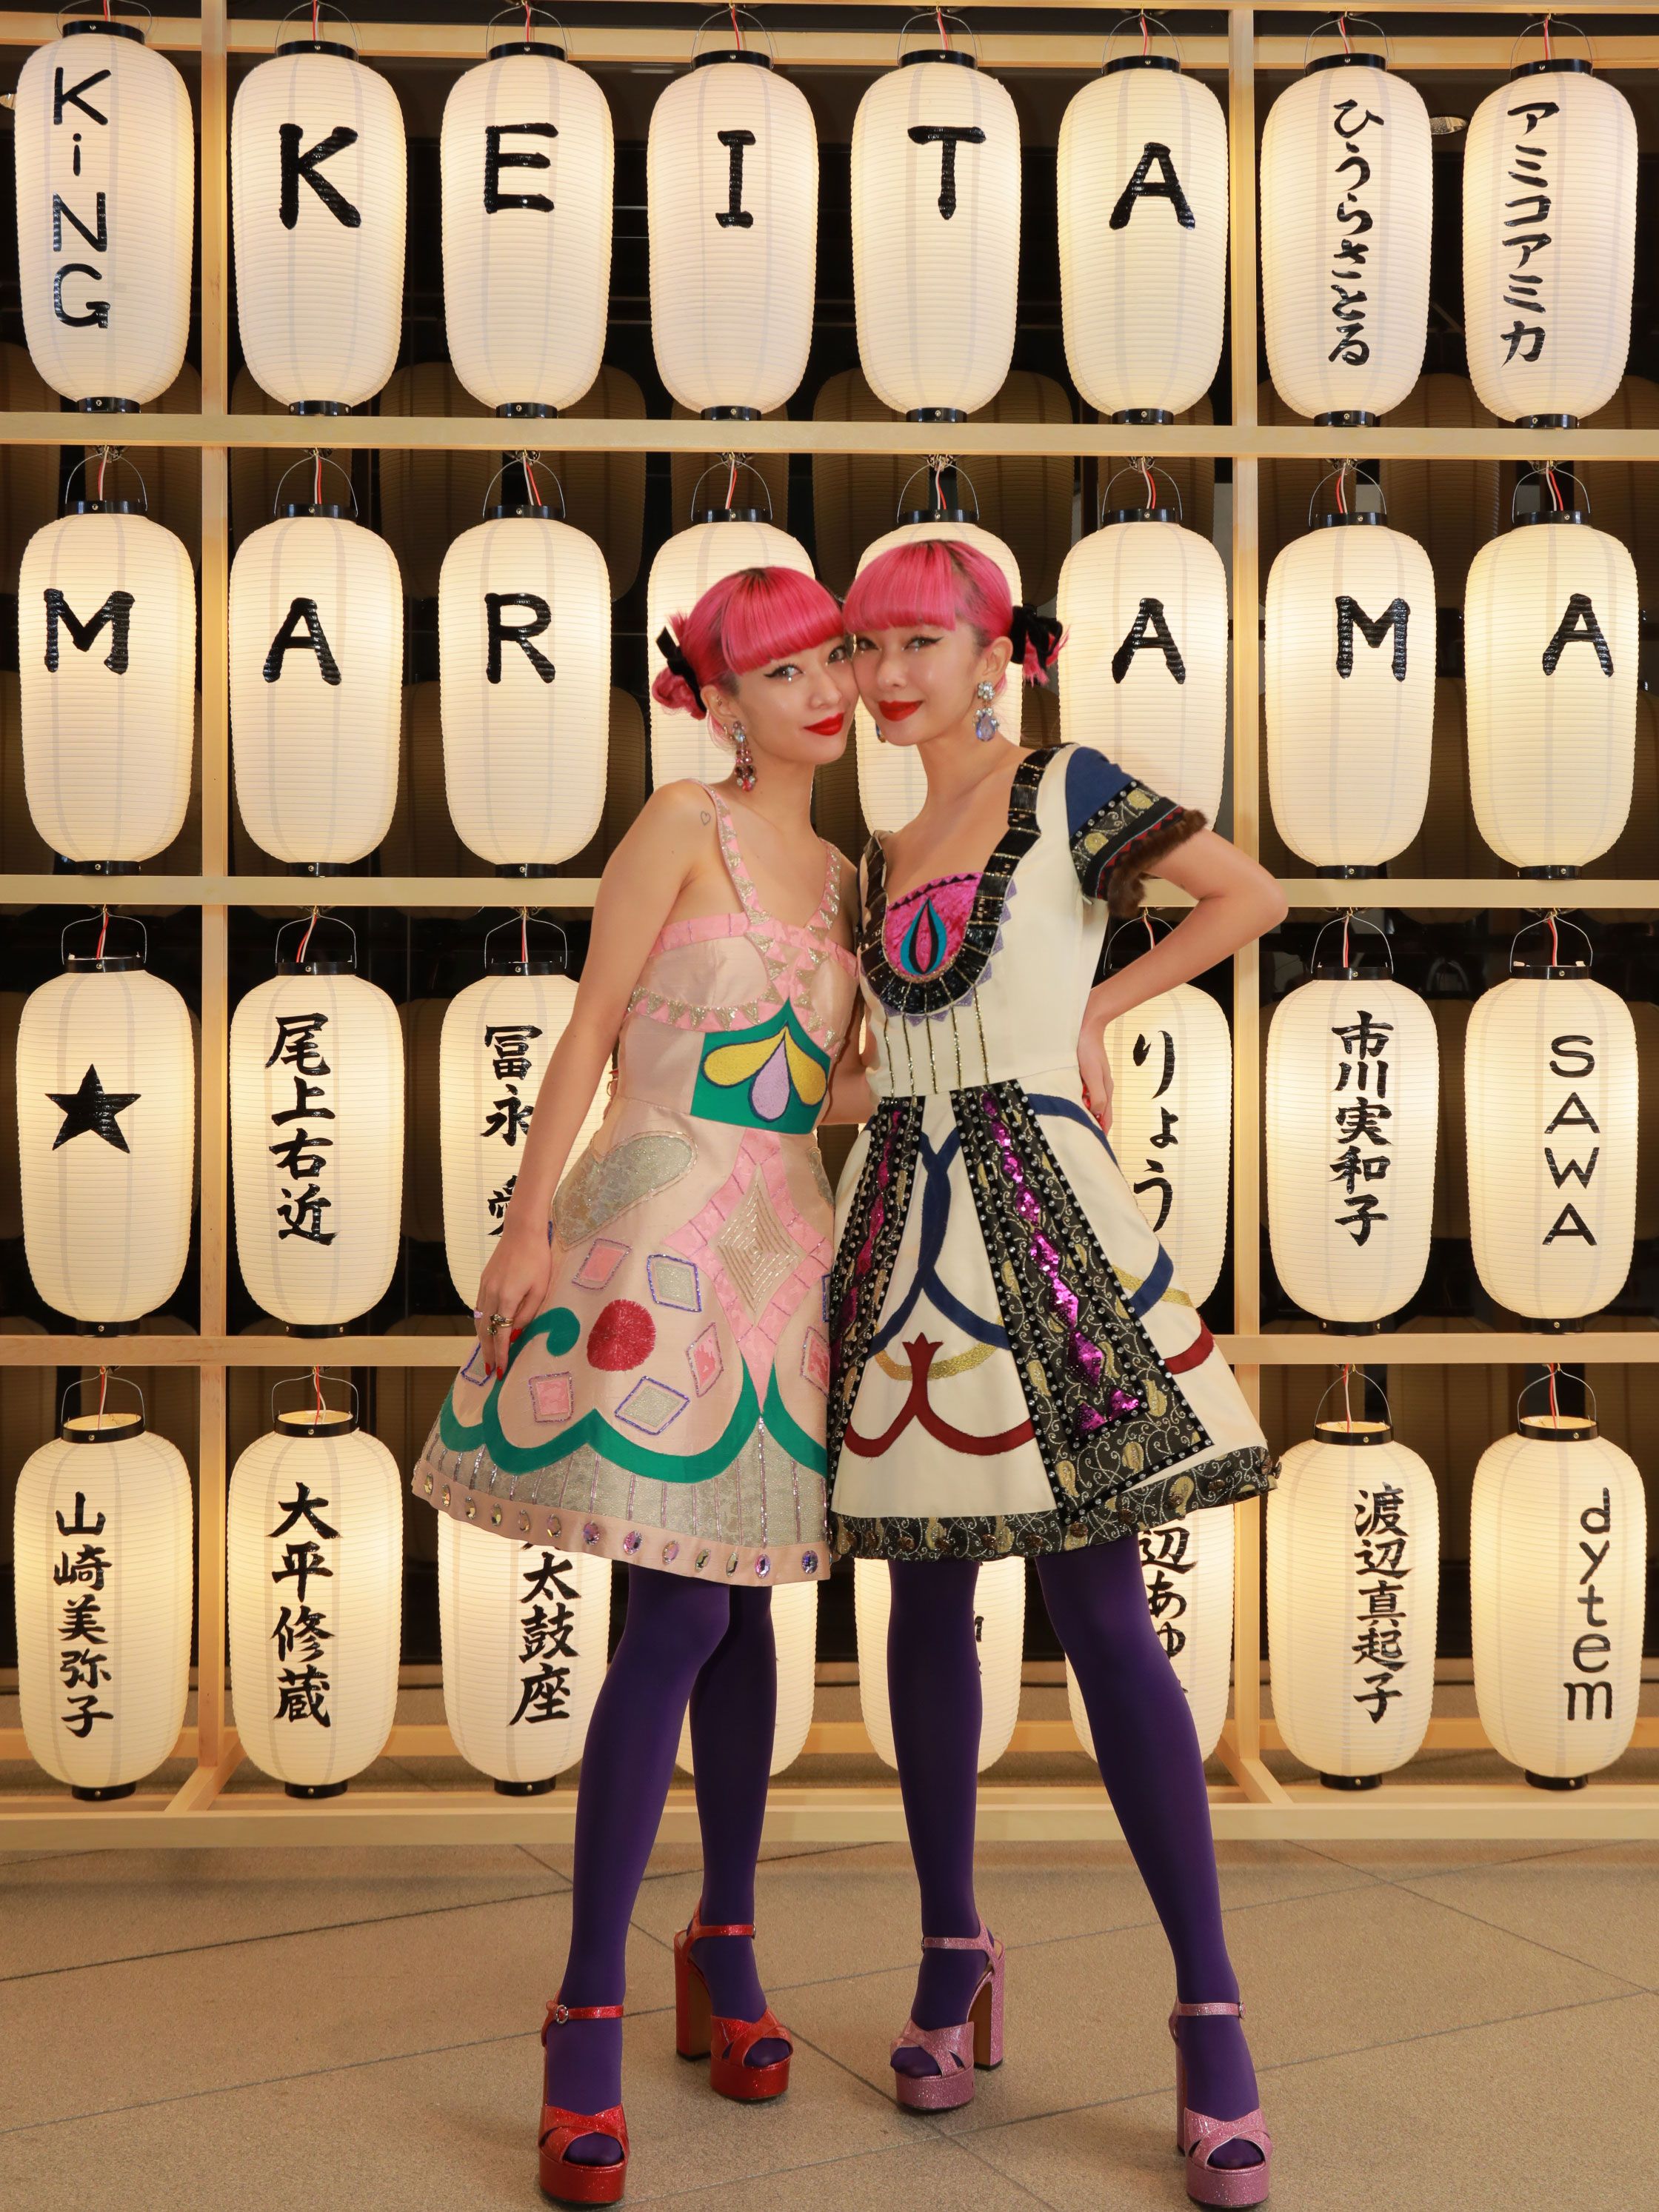 ケイタ マルヤマ」が魅せた新しいファッションの形。愛に溢れたショー